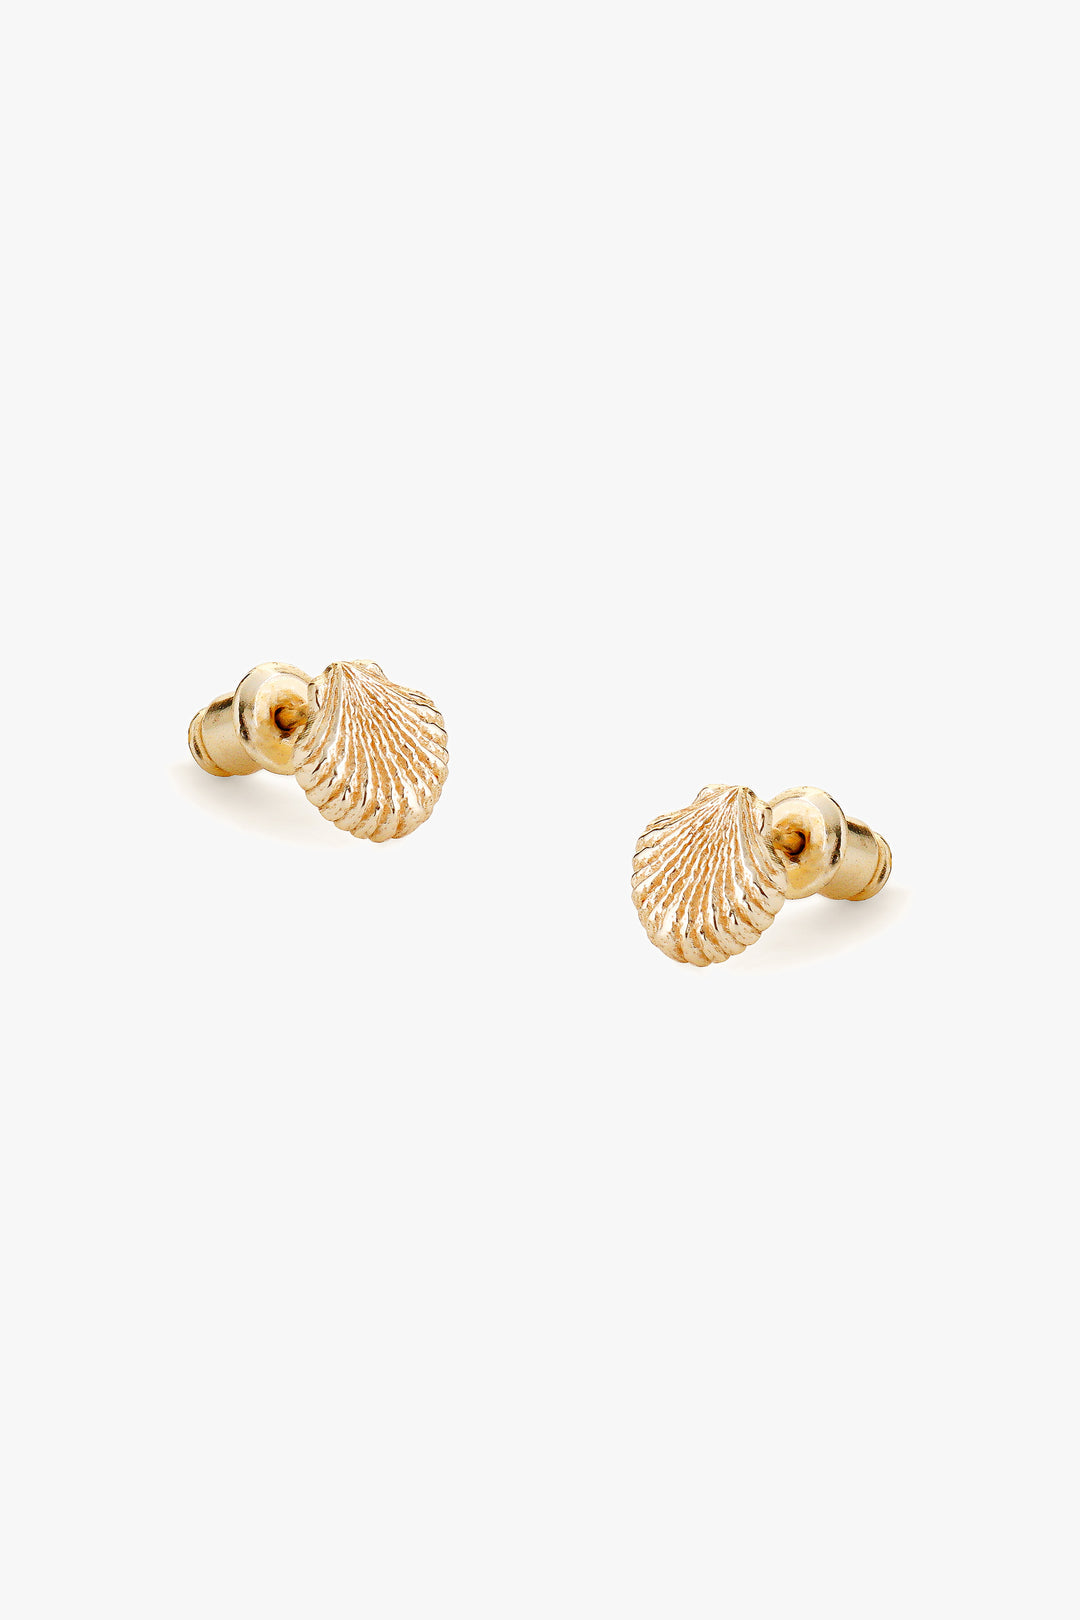 Tutti & Co Shell Earrings in Gold